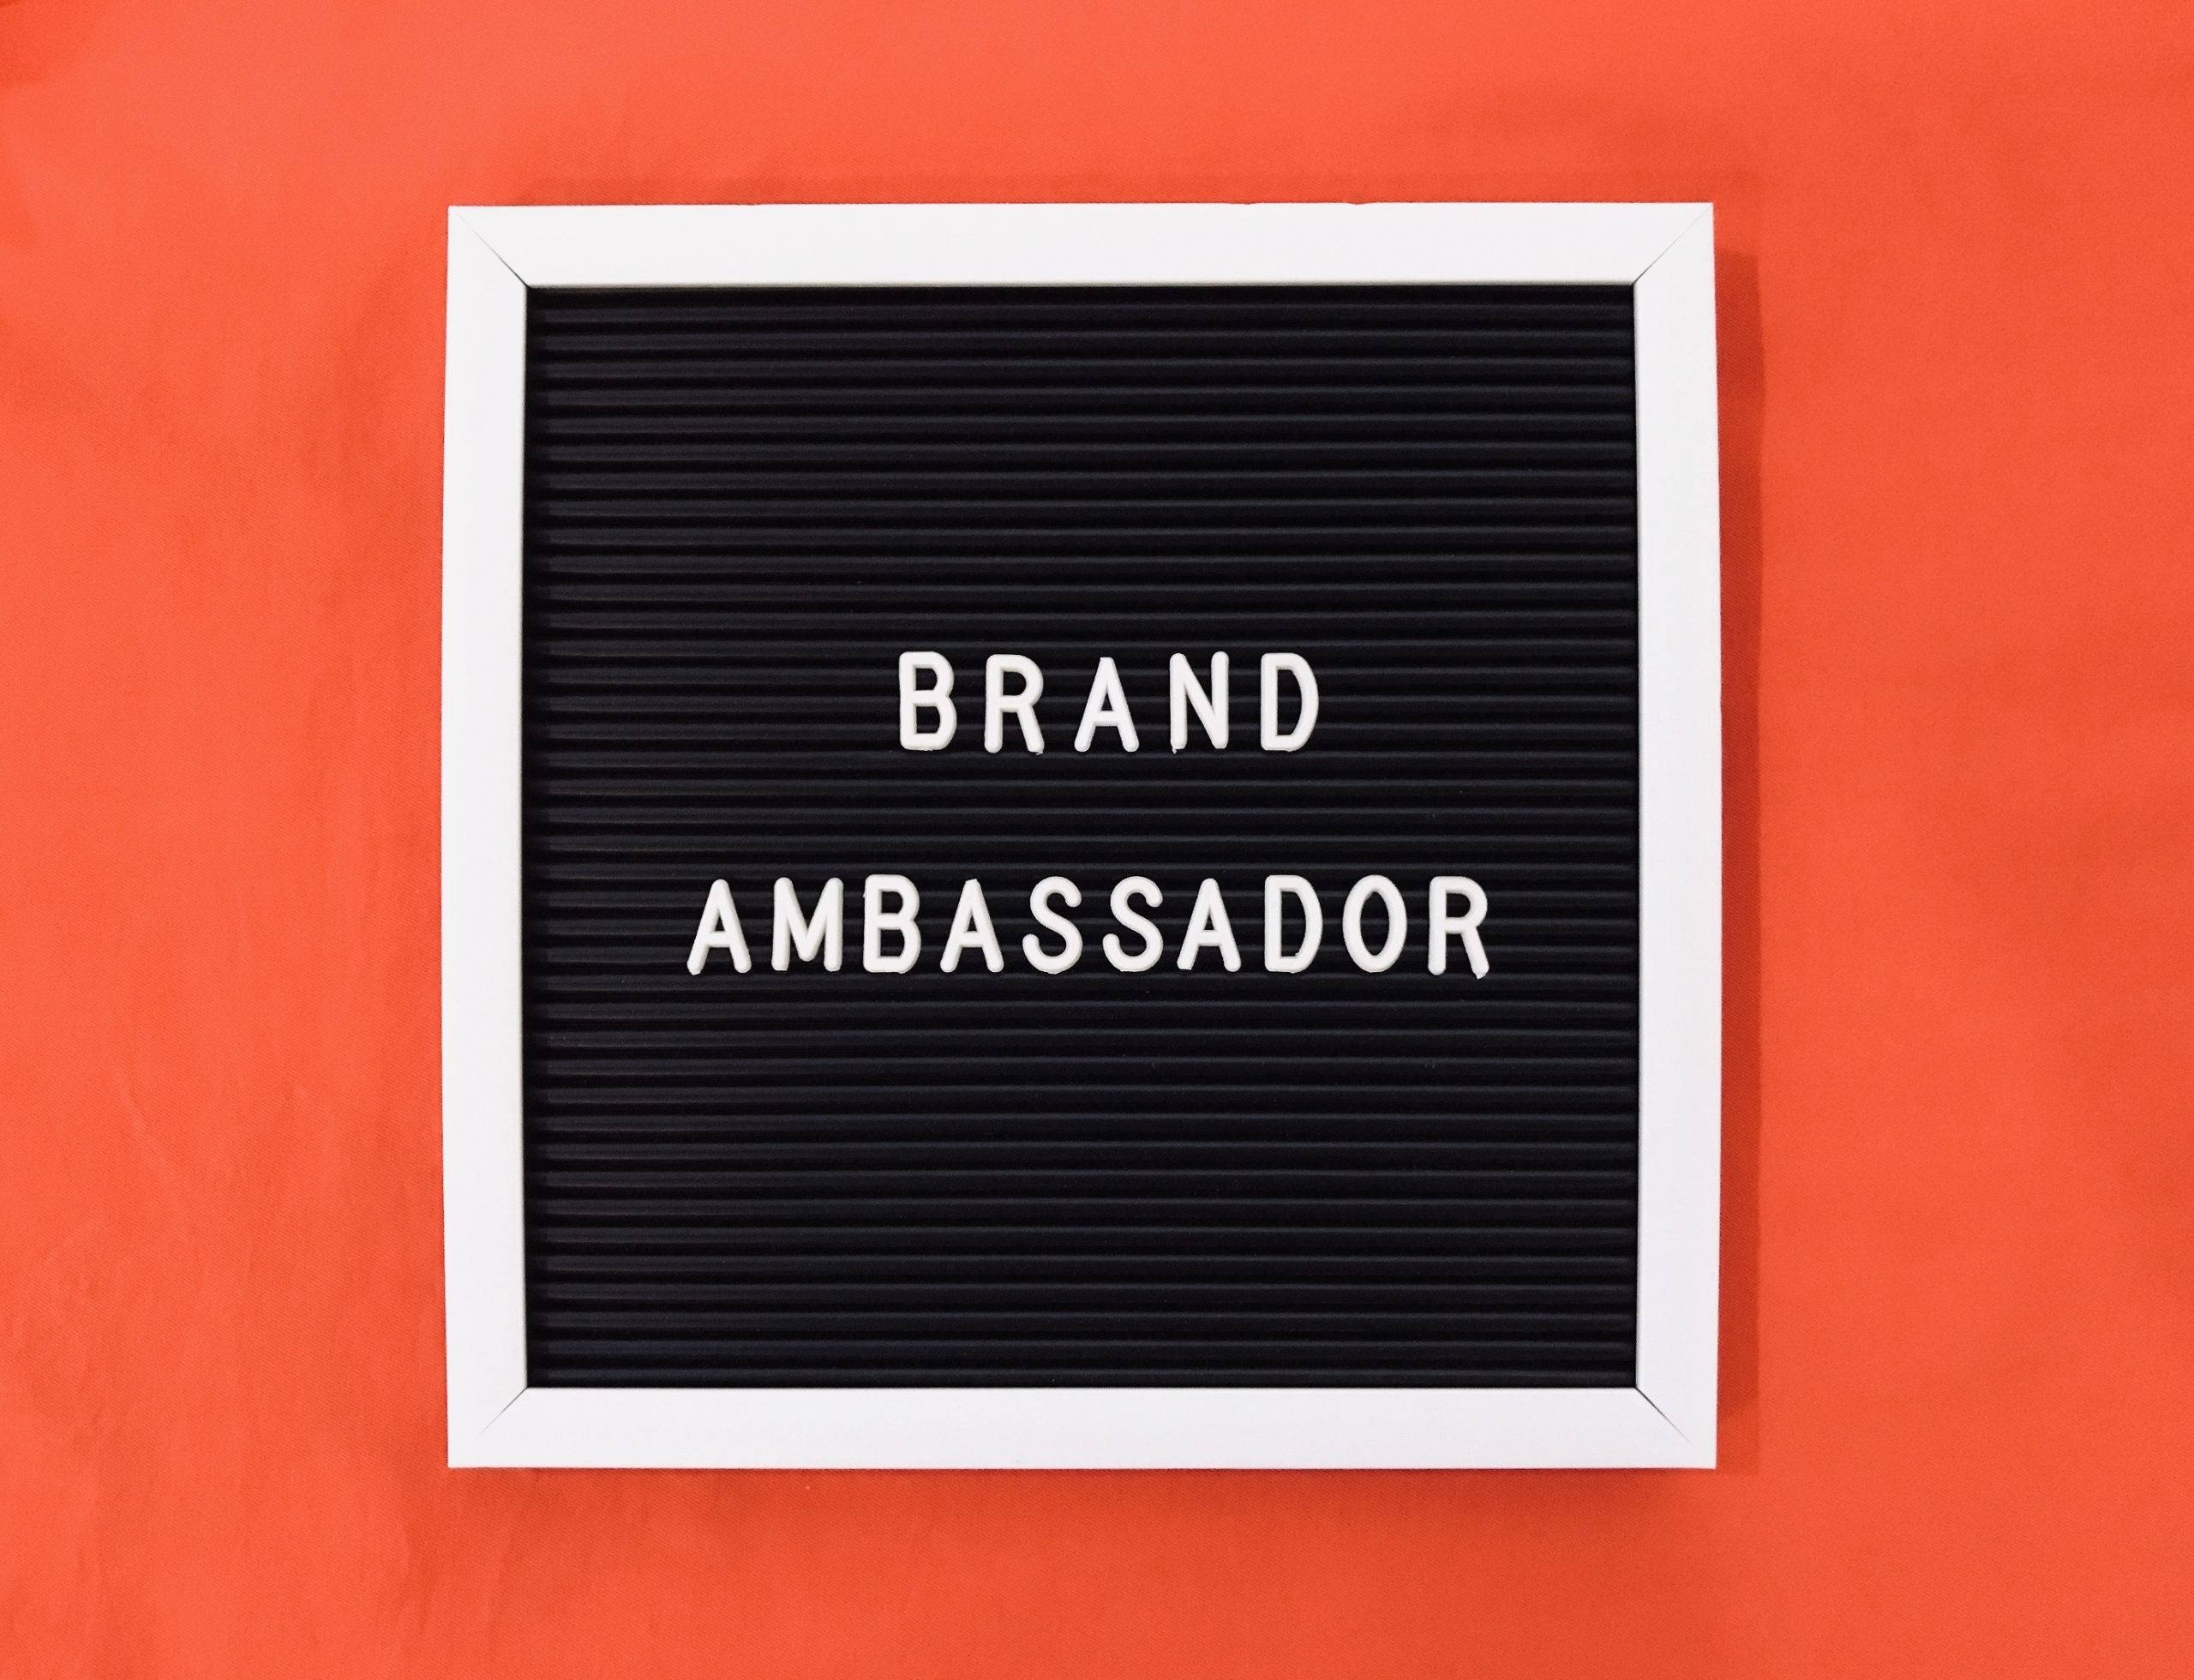 brand-ambassador-2022-10-26-05-23-38-utc